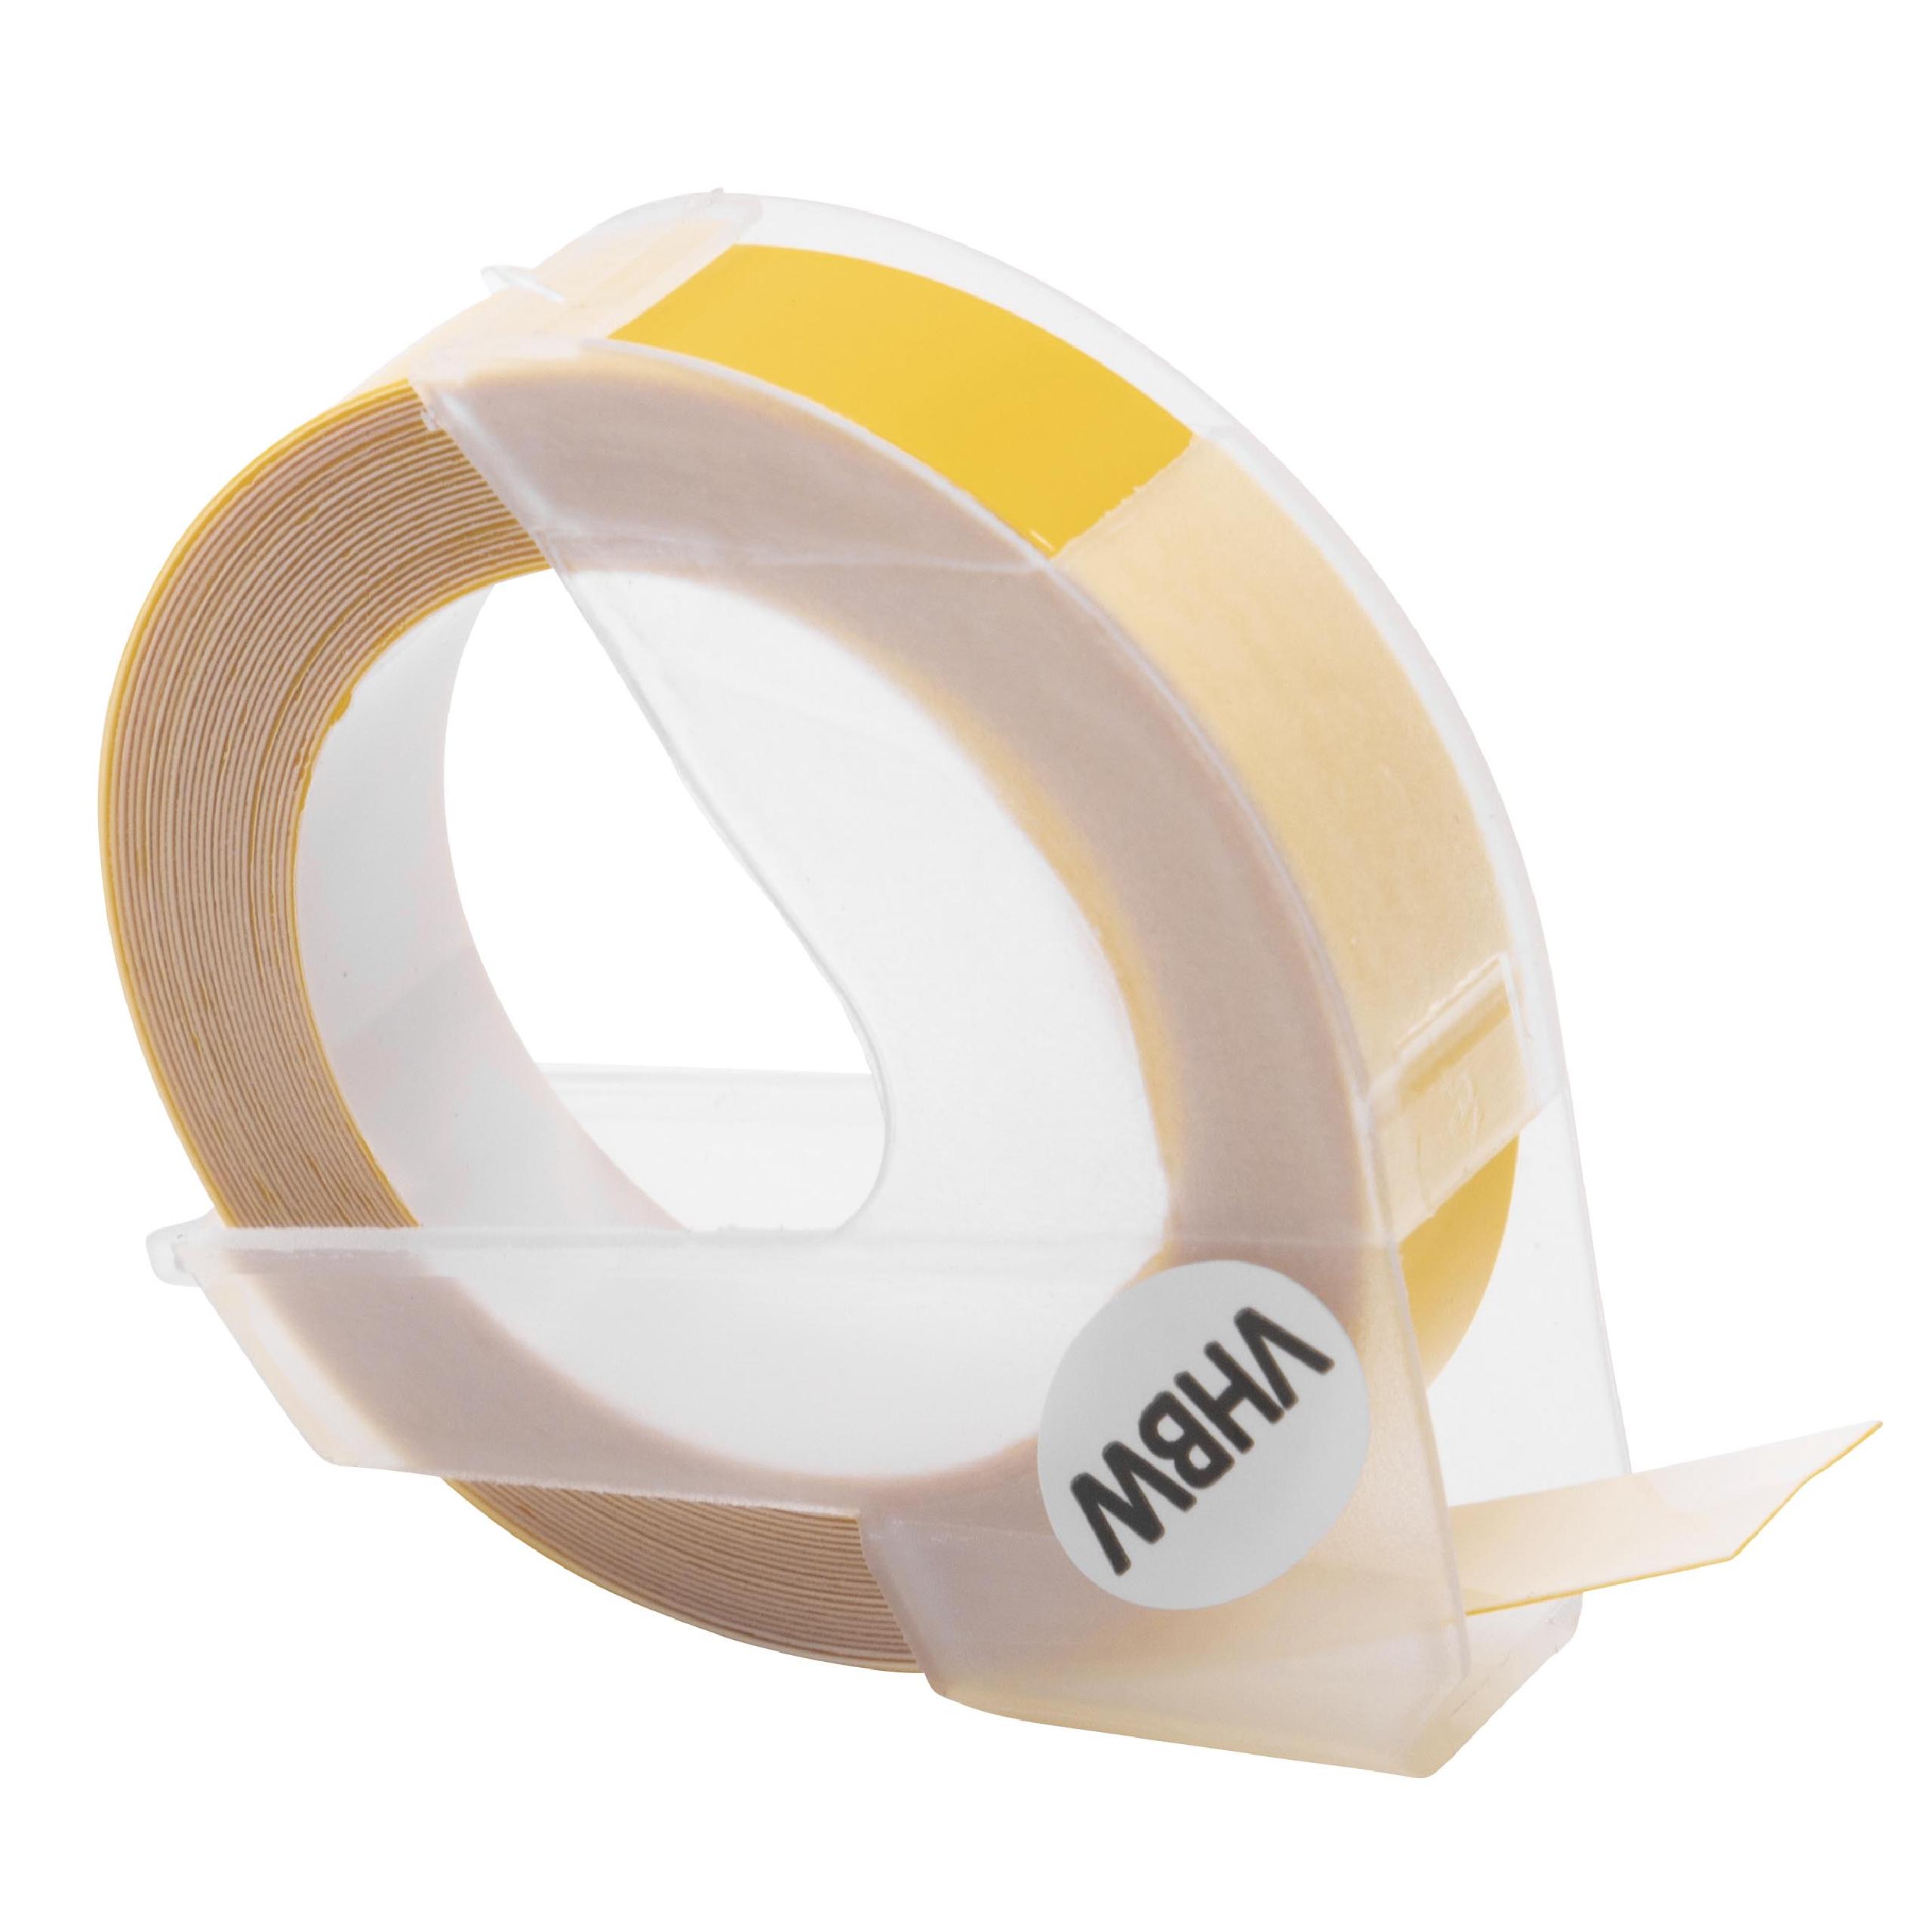 Nastro goffratura 3D sostituisce Dymo S0898160, 520108 per etichettatrice Motex 9mm bianco su giallo